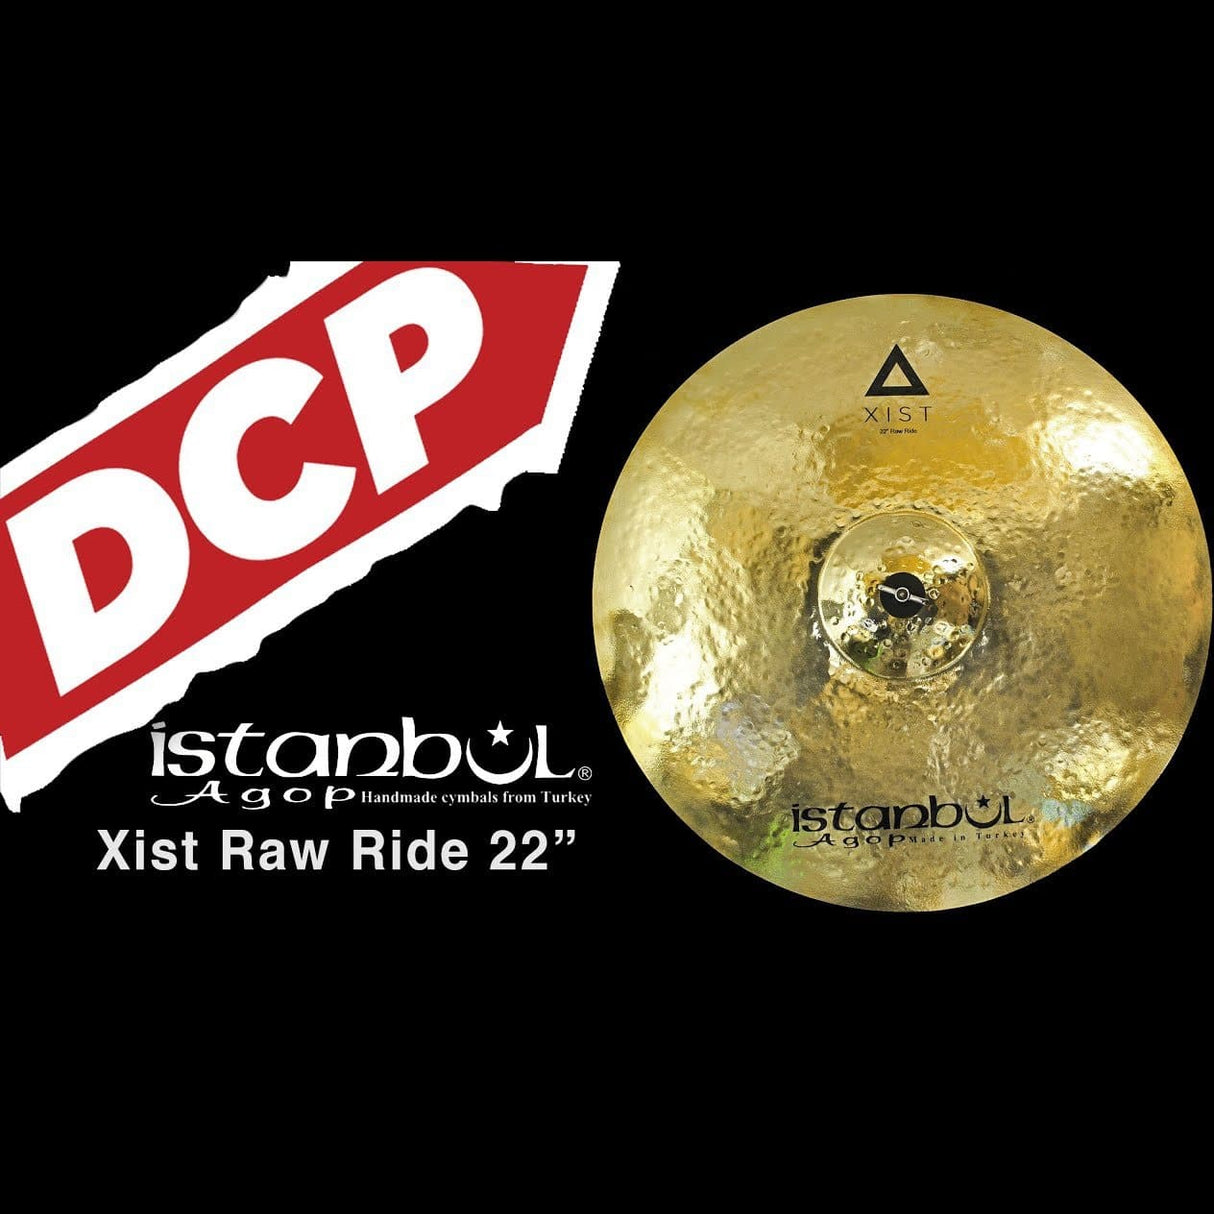 Istanbul Agop Xist Brilliant Raw Ride Cymbal 22"